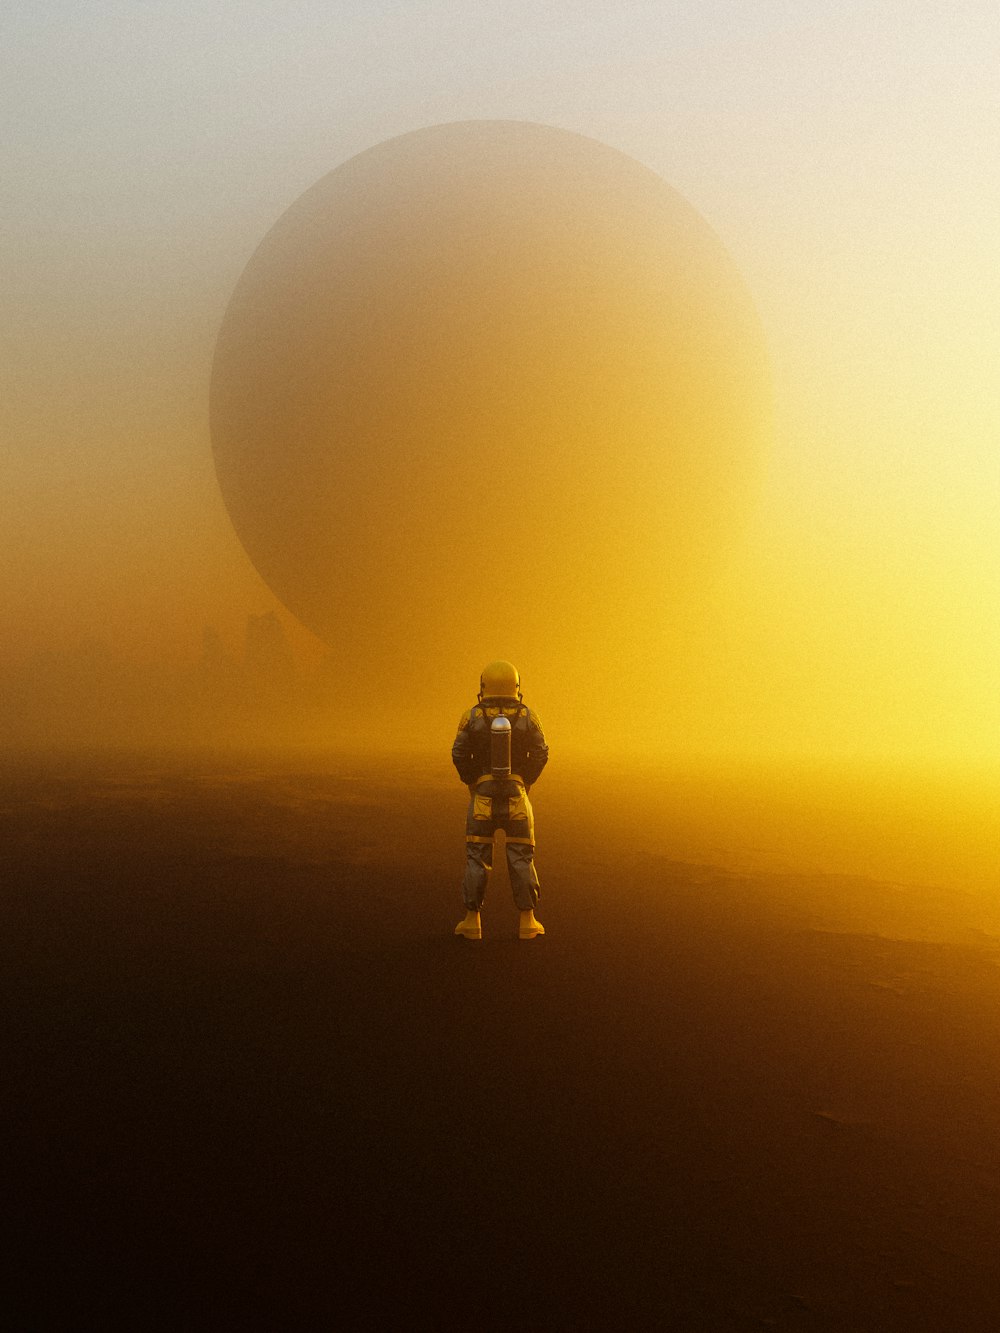 uma pessoa em pé na frente de uma lua grande